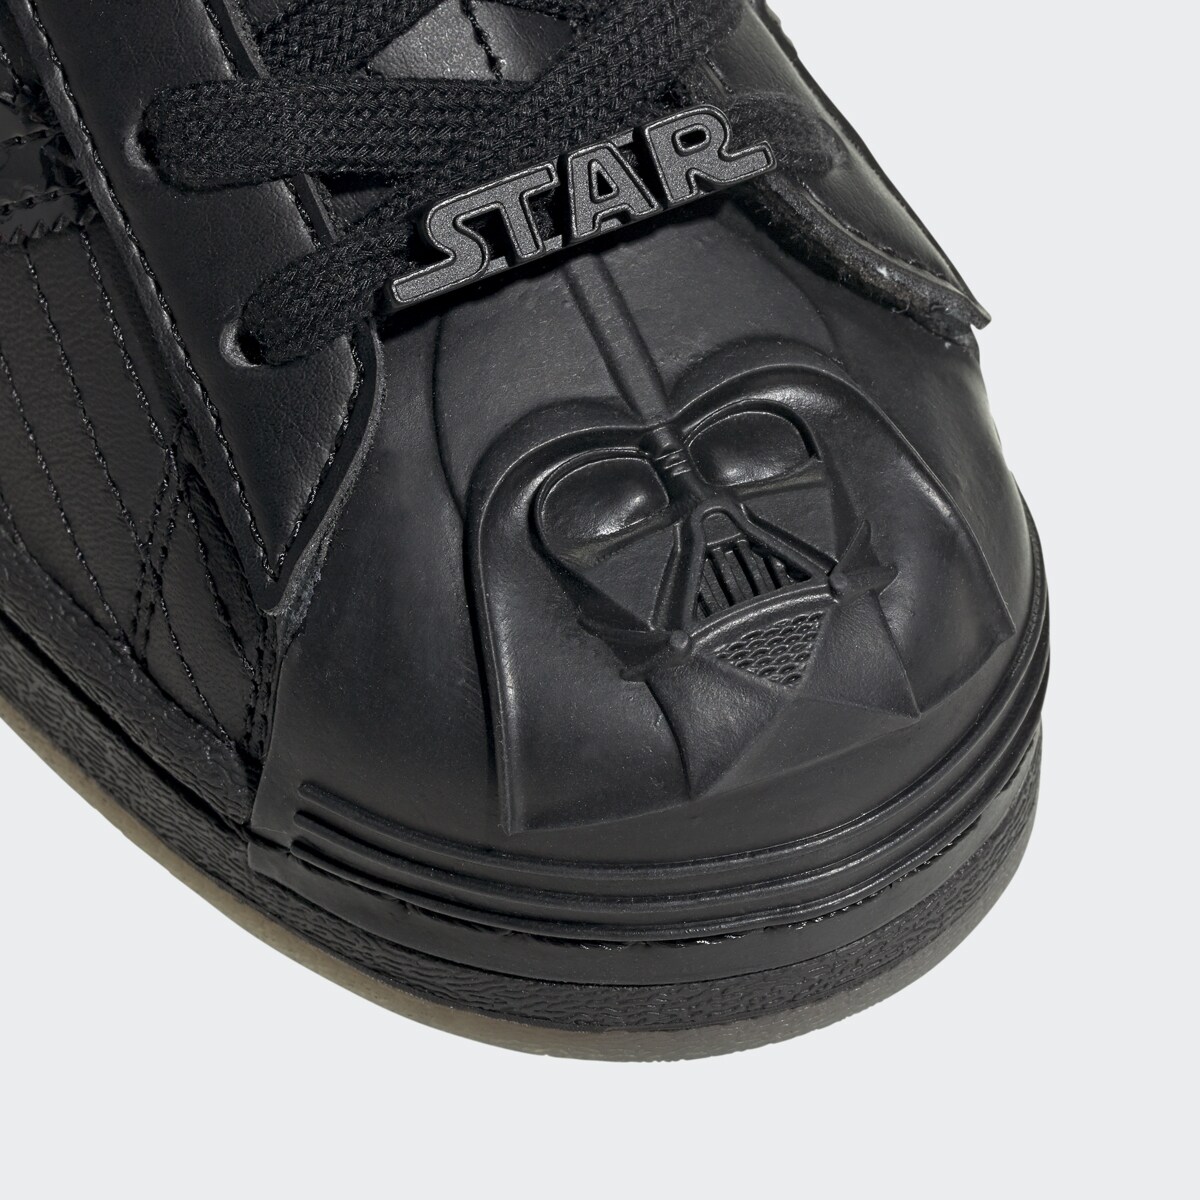 Darth Vader Adidas sneaker